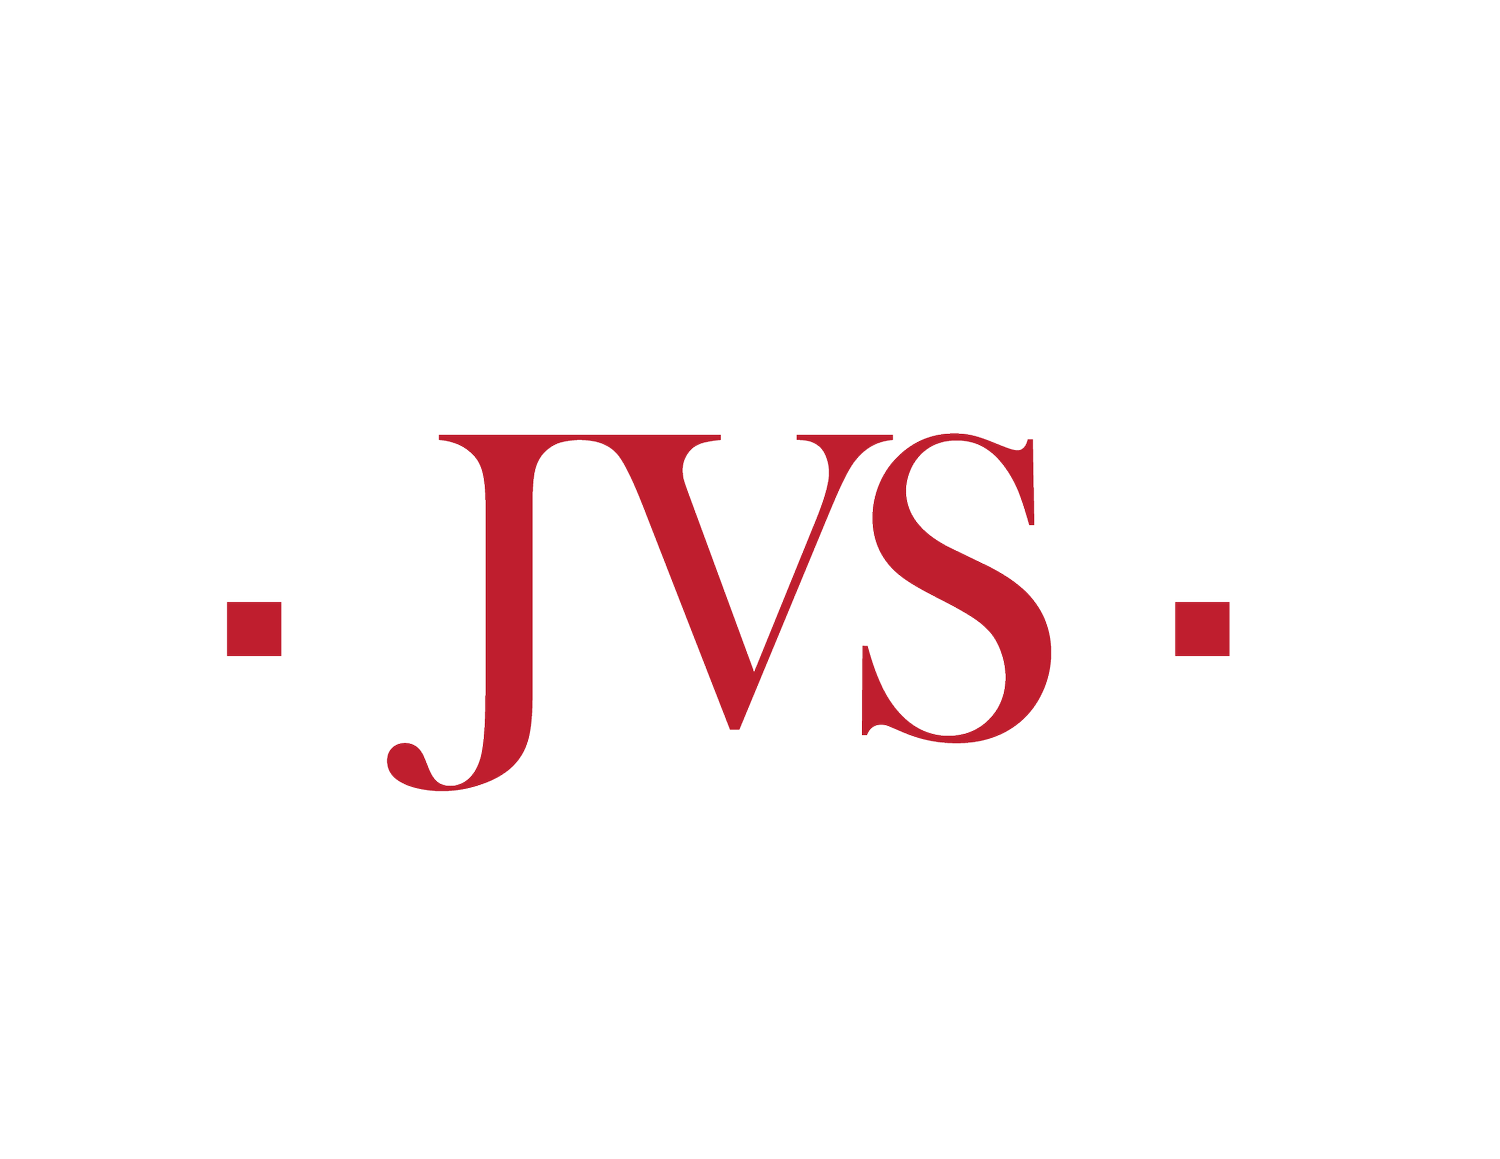 JVS Philadelphia Fund for Women